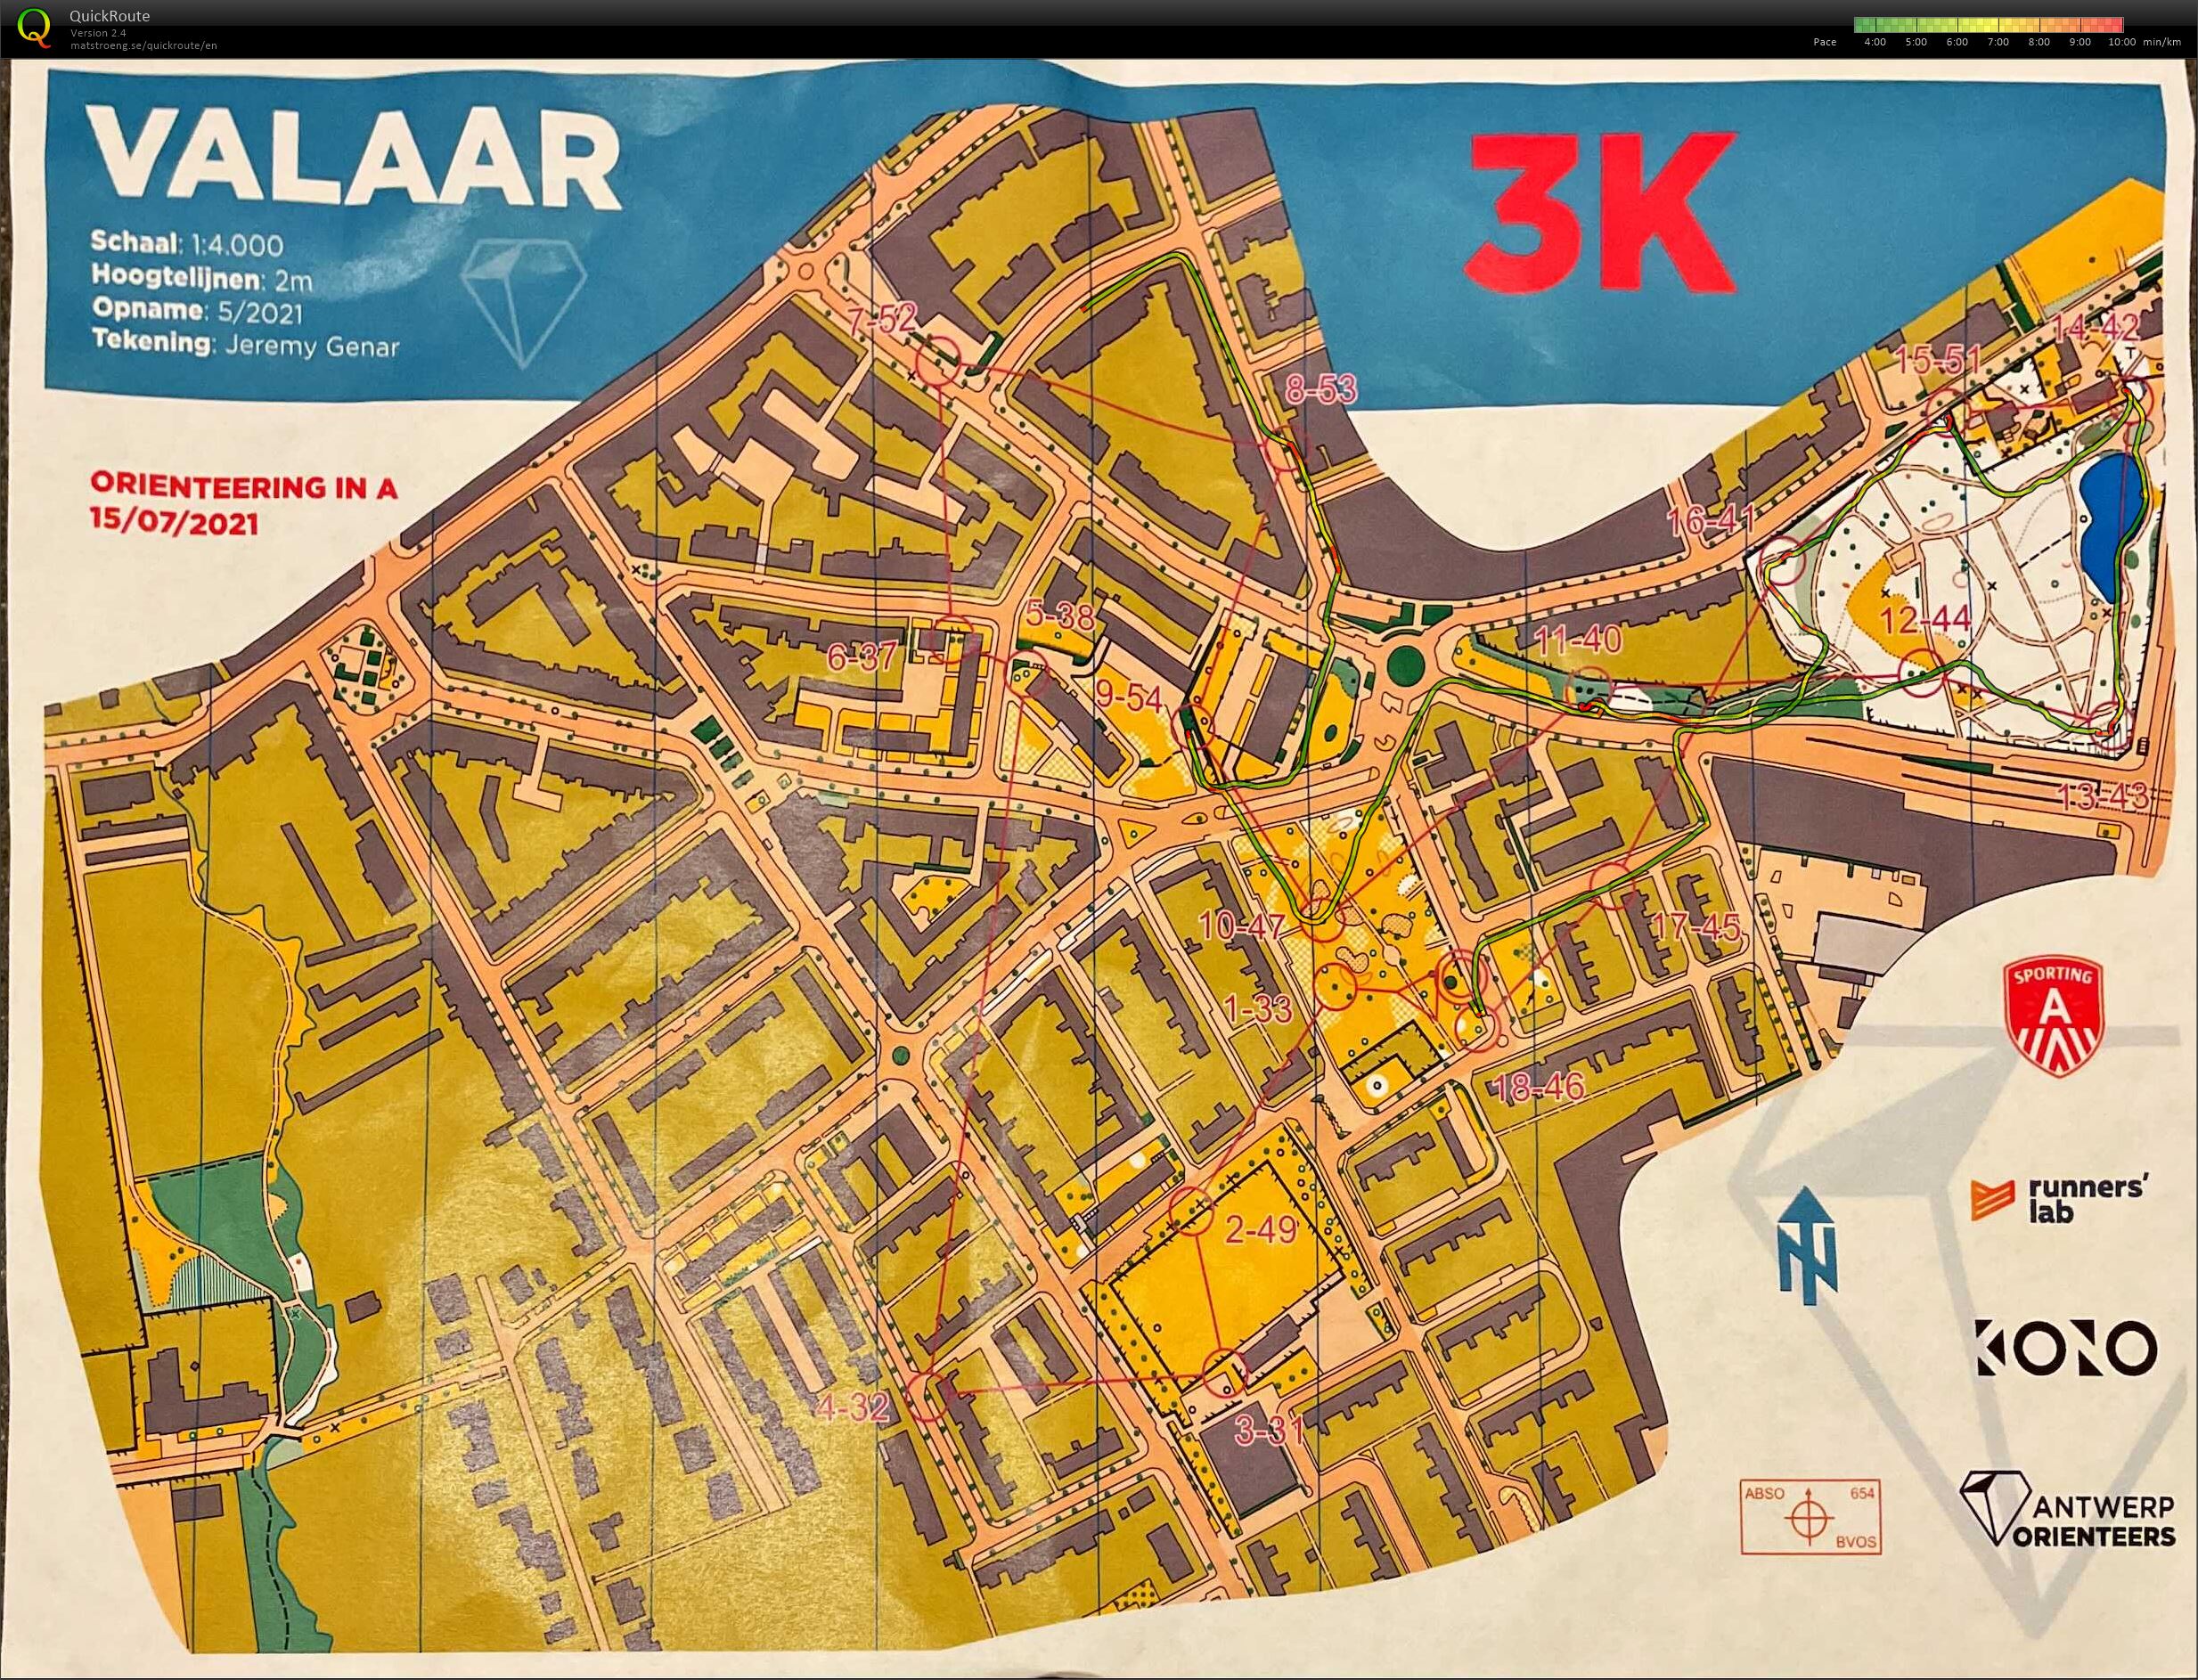 Orienteering in A - Wilrijk Valaar - 3K (15/07/2021)